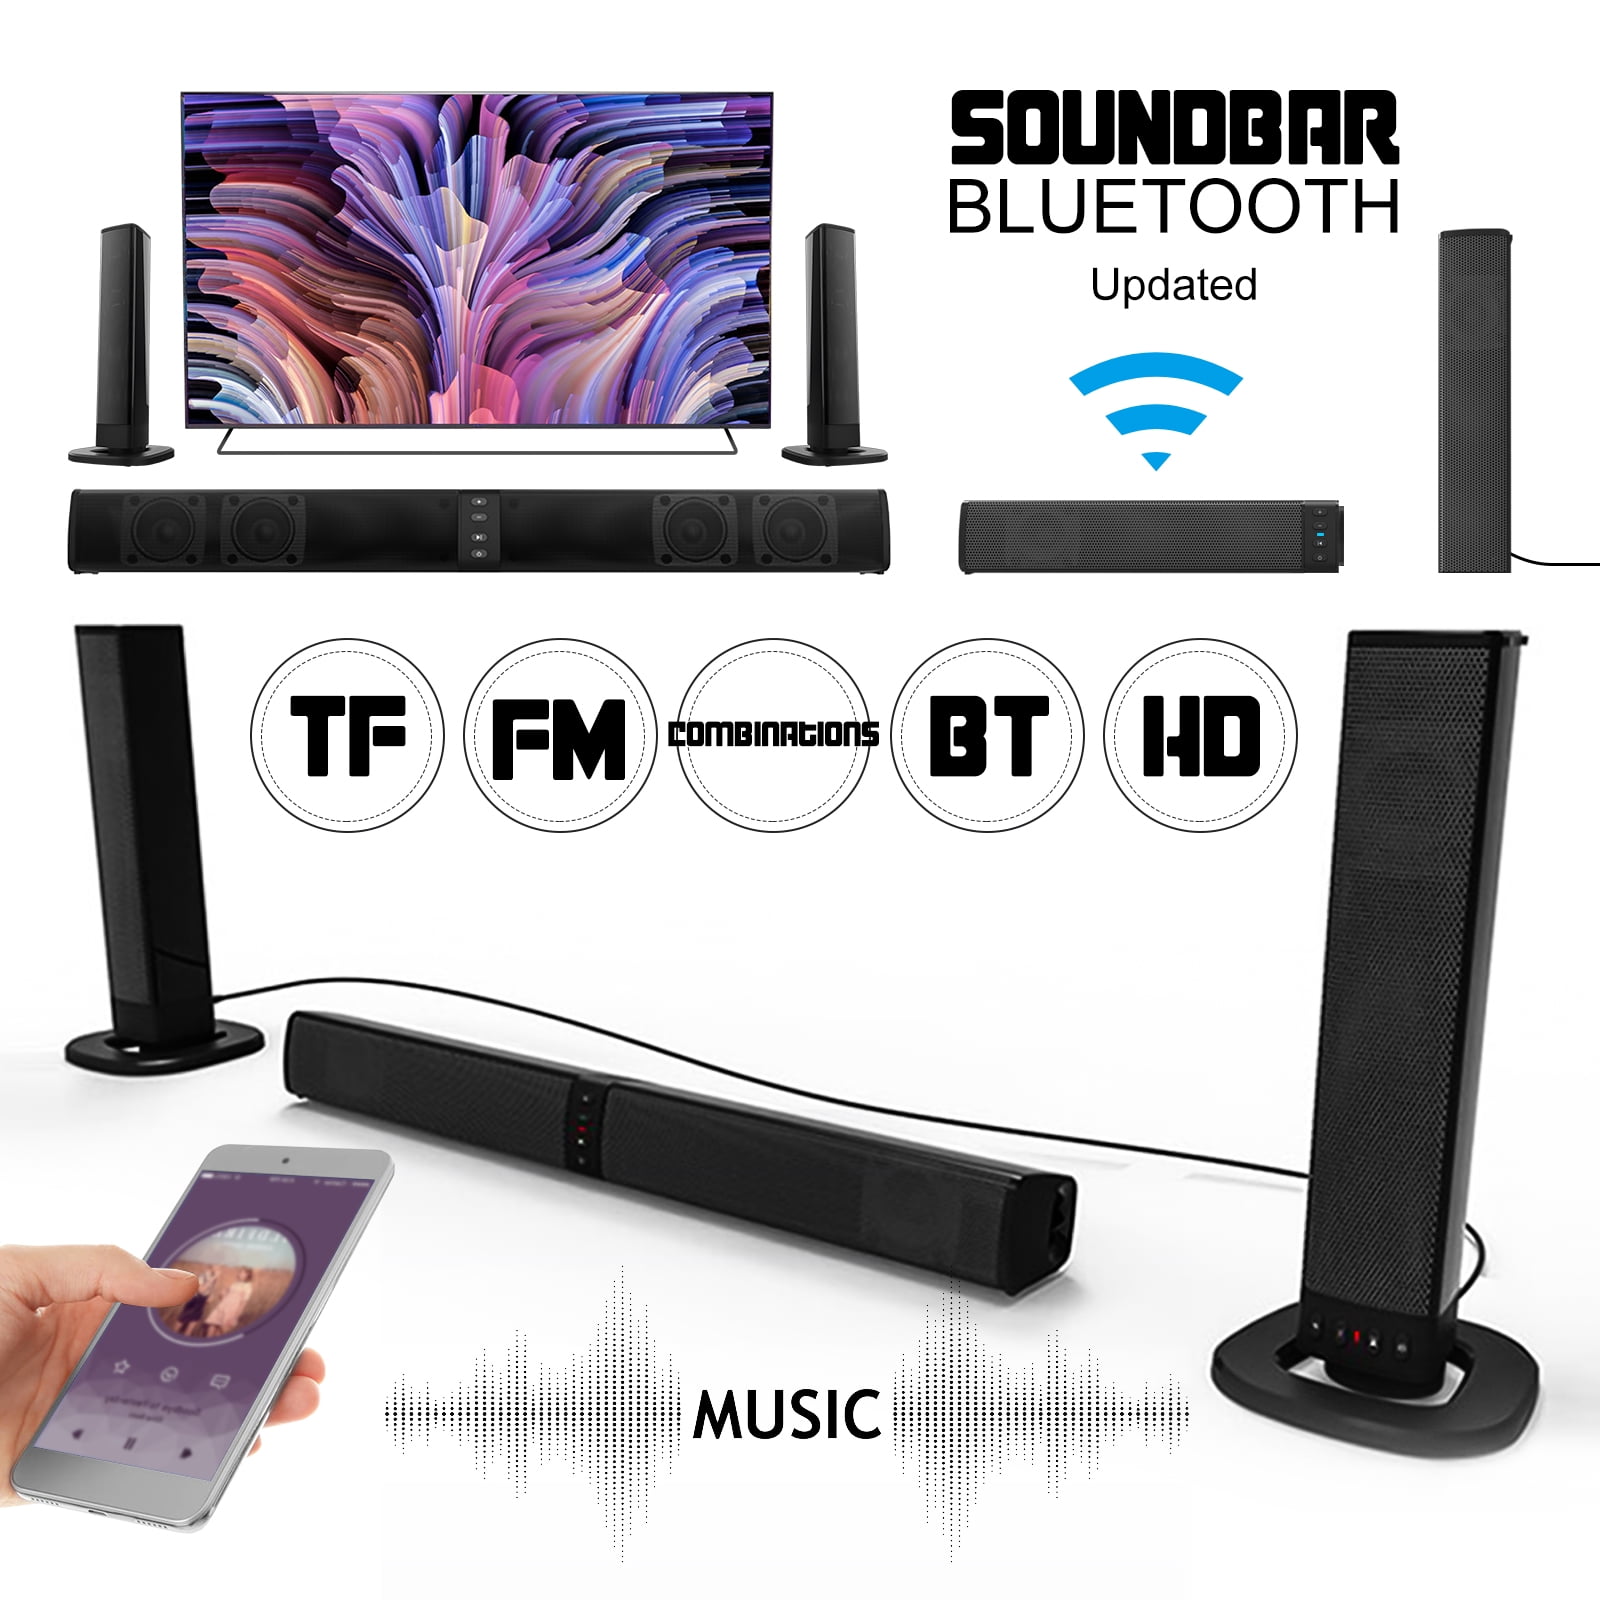 Built-in Subwoofer Surround Sound Bluetooth Speaker Sdesign Household Desktop Soundbar for PC TV Video Game Laptop Tablet